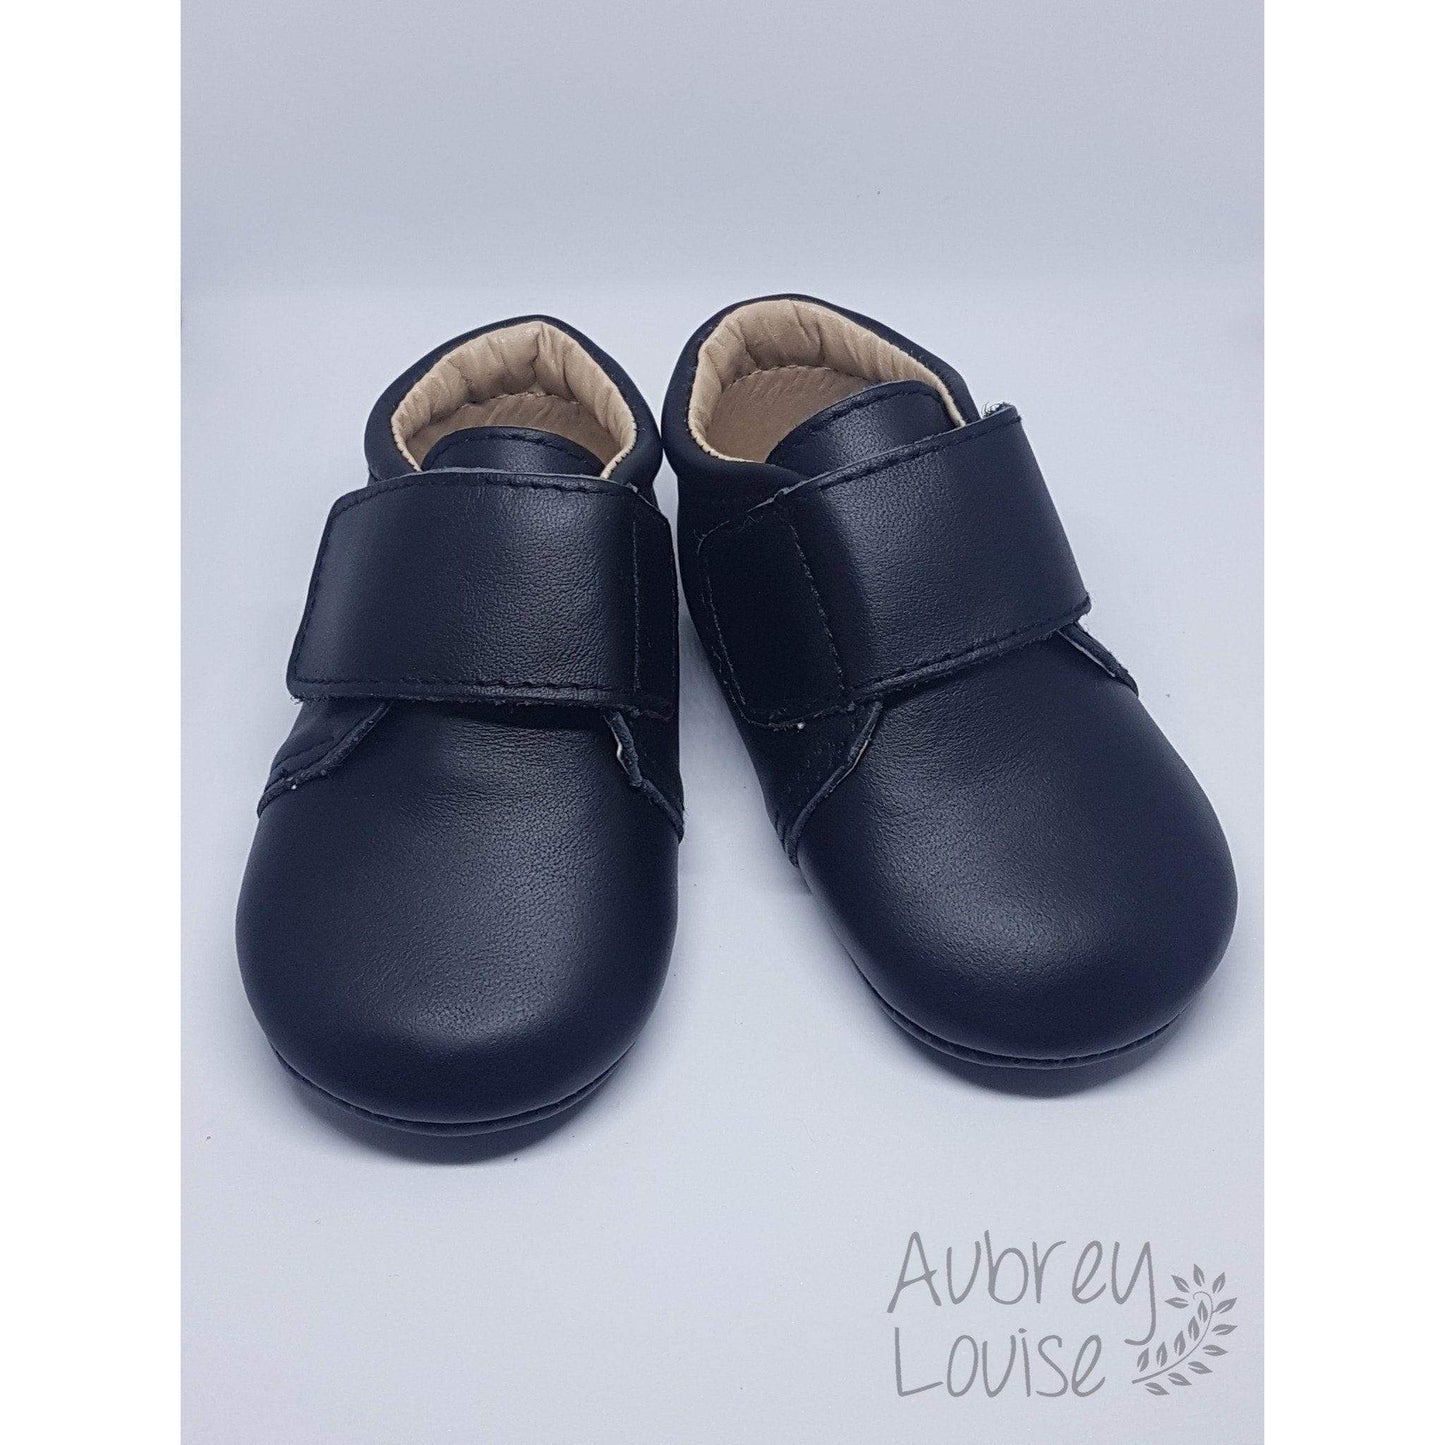 Aubrey Louise Shoes 2 Black Boot